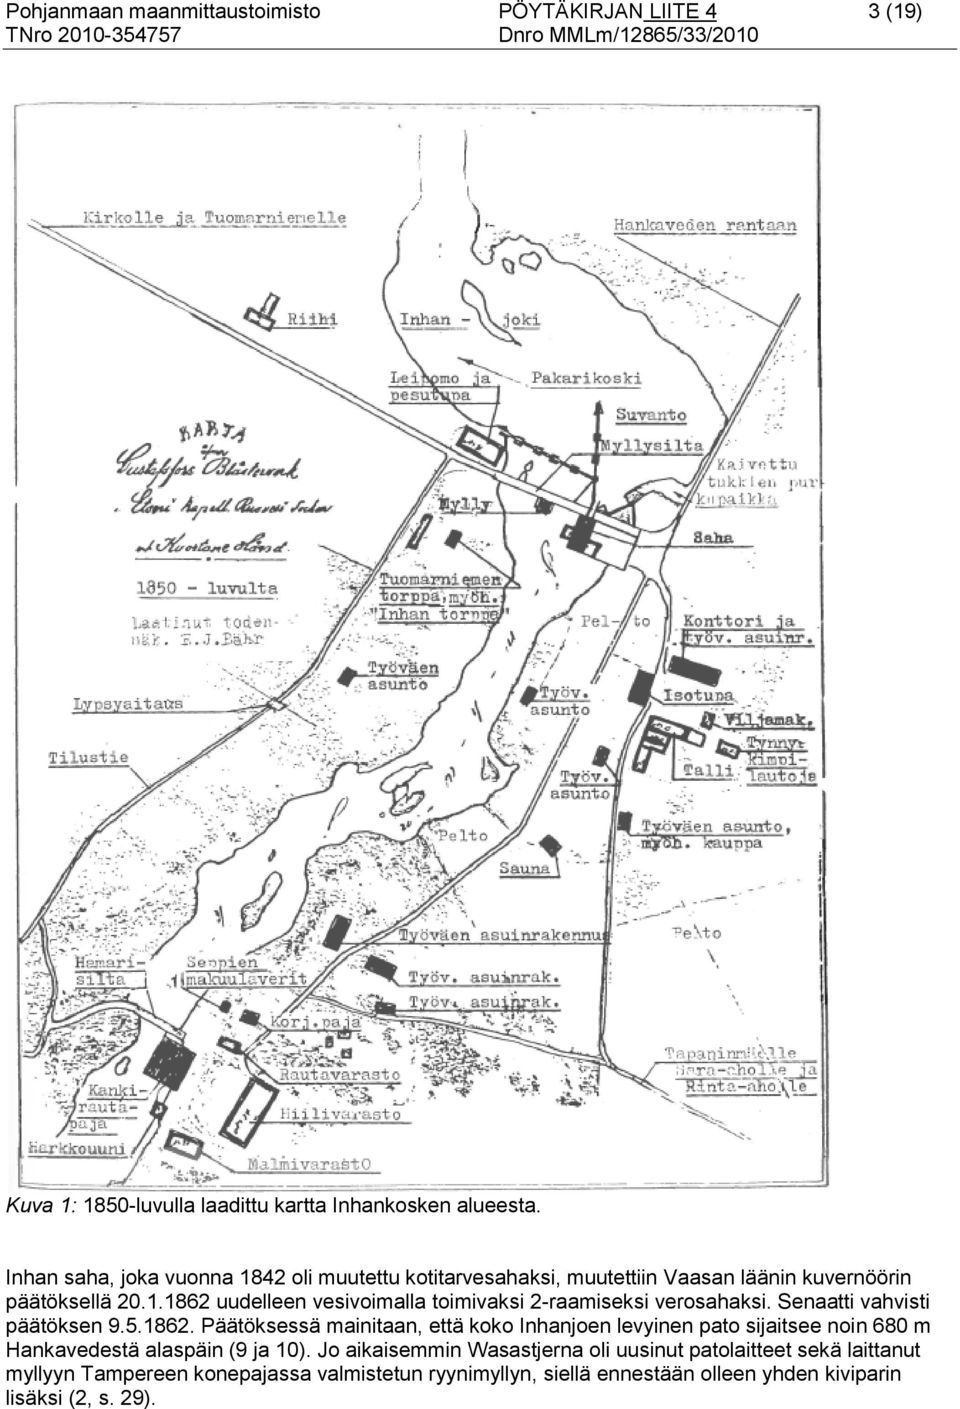 Senaatti vahvisti päätöksen 9.5.1862. Päätöksessä mainitaan, että koko Inhanjoen levyinen pato sijaitsee noin 680 m Hankavedestä alaspäin (9 ja 10).